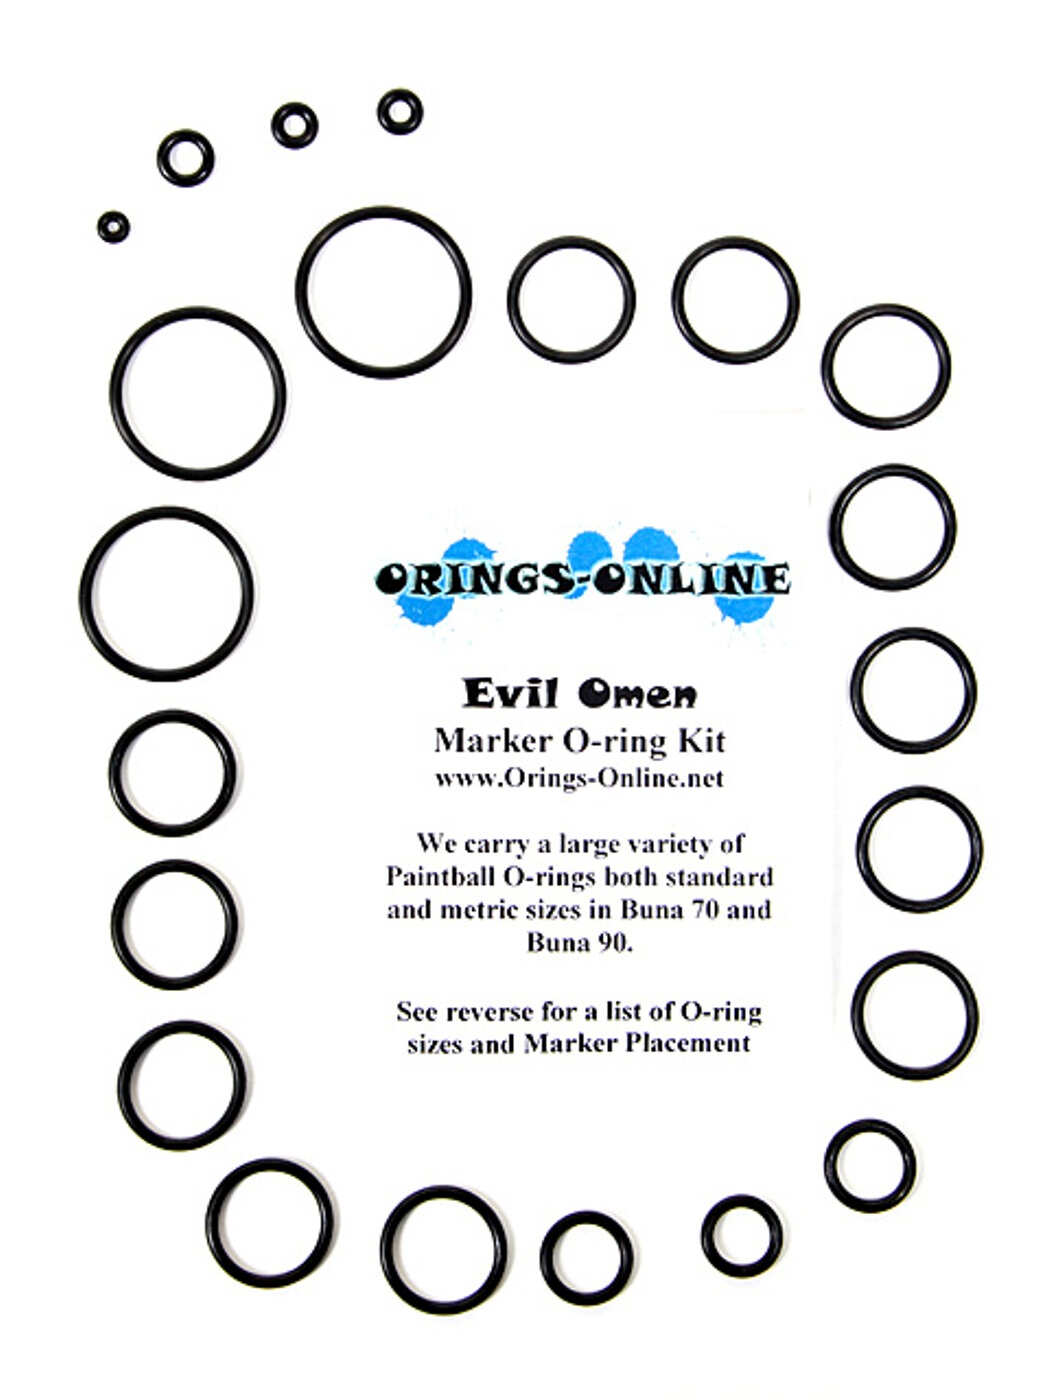 Evil Omen O-ring Kit